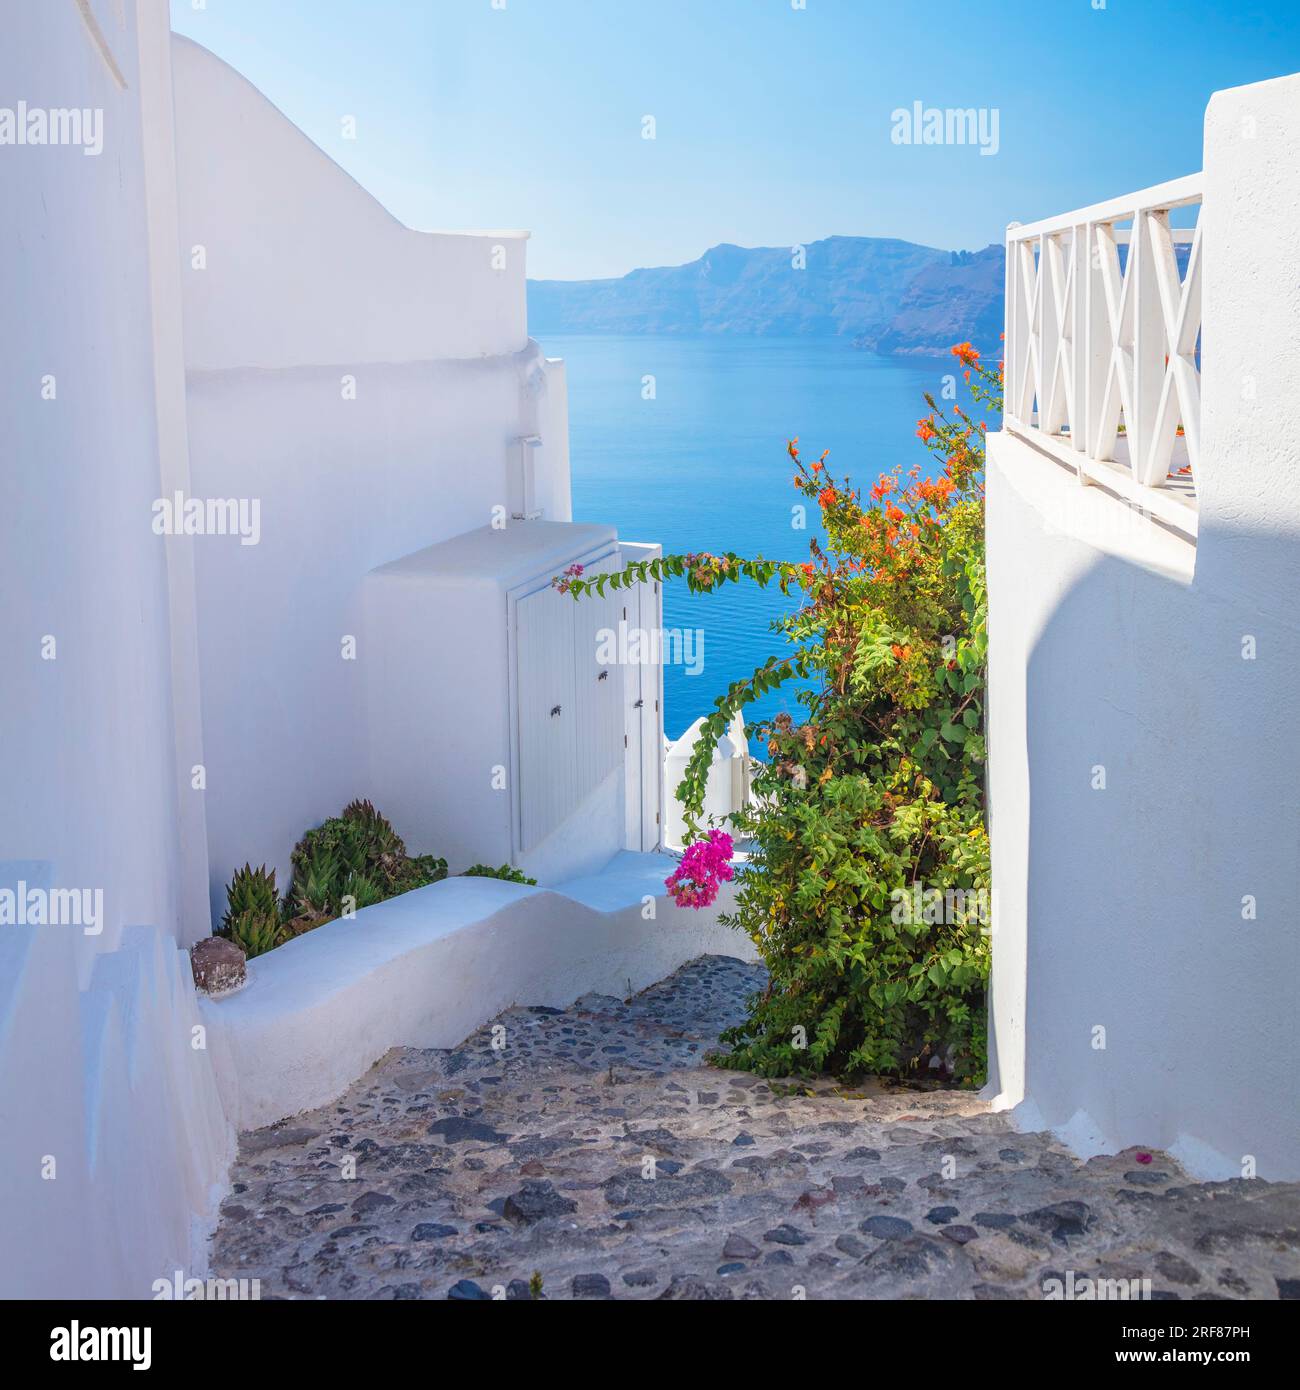 Grecia, isola di Santorini, Oia - architettura bianca di una stretta strada con fiori, scalini che conducono al mare. Isole greche, Santorini, vacanza europea Foto Stock